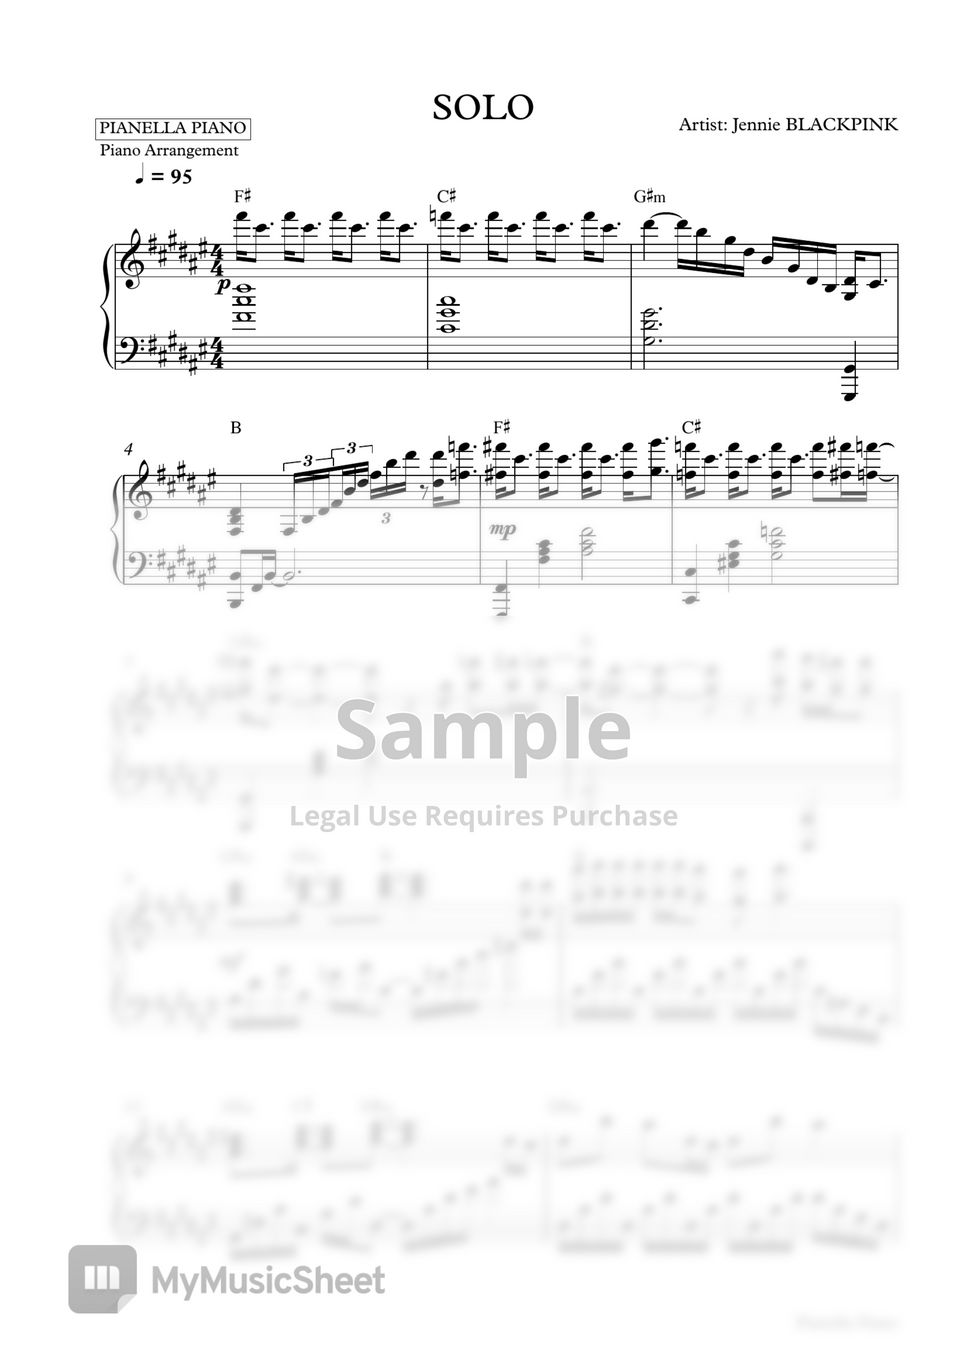 BLACKPINK JENNIE - SOLO (Piano Sheet) by Pianella Piano